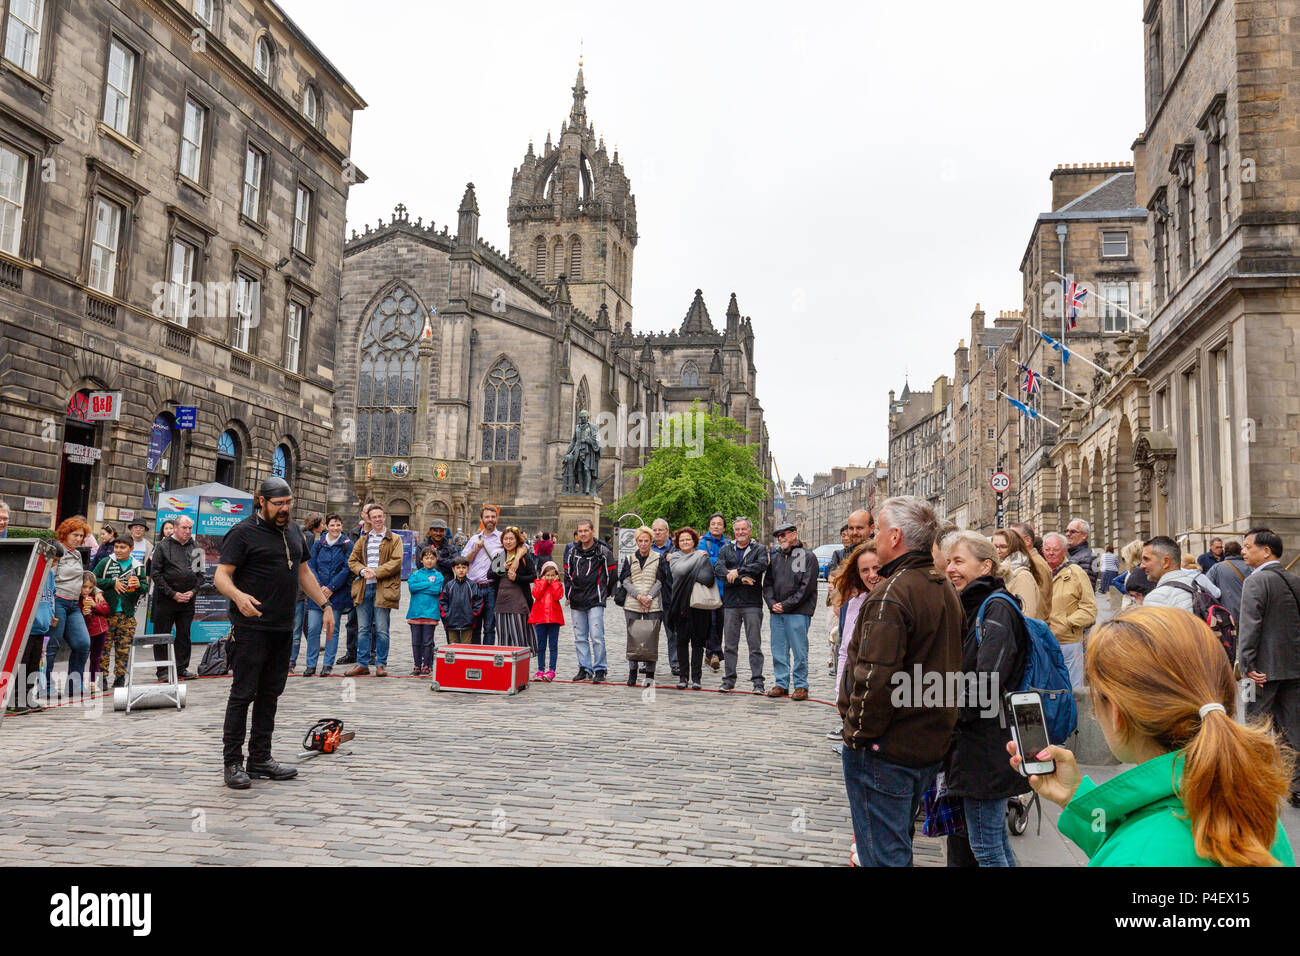 Royal Mile von Edinburgh - Street Performer in der Nähe von St Giles Cathedral, The Royal Mile, Edinburgh Altstadt, Weltkulturerbe der UNESCO, Edinburgh Schottland Großbritannien Stockfoto